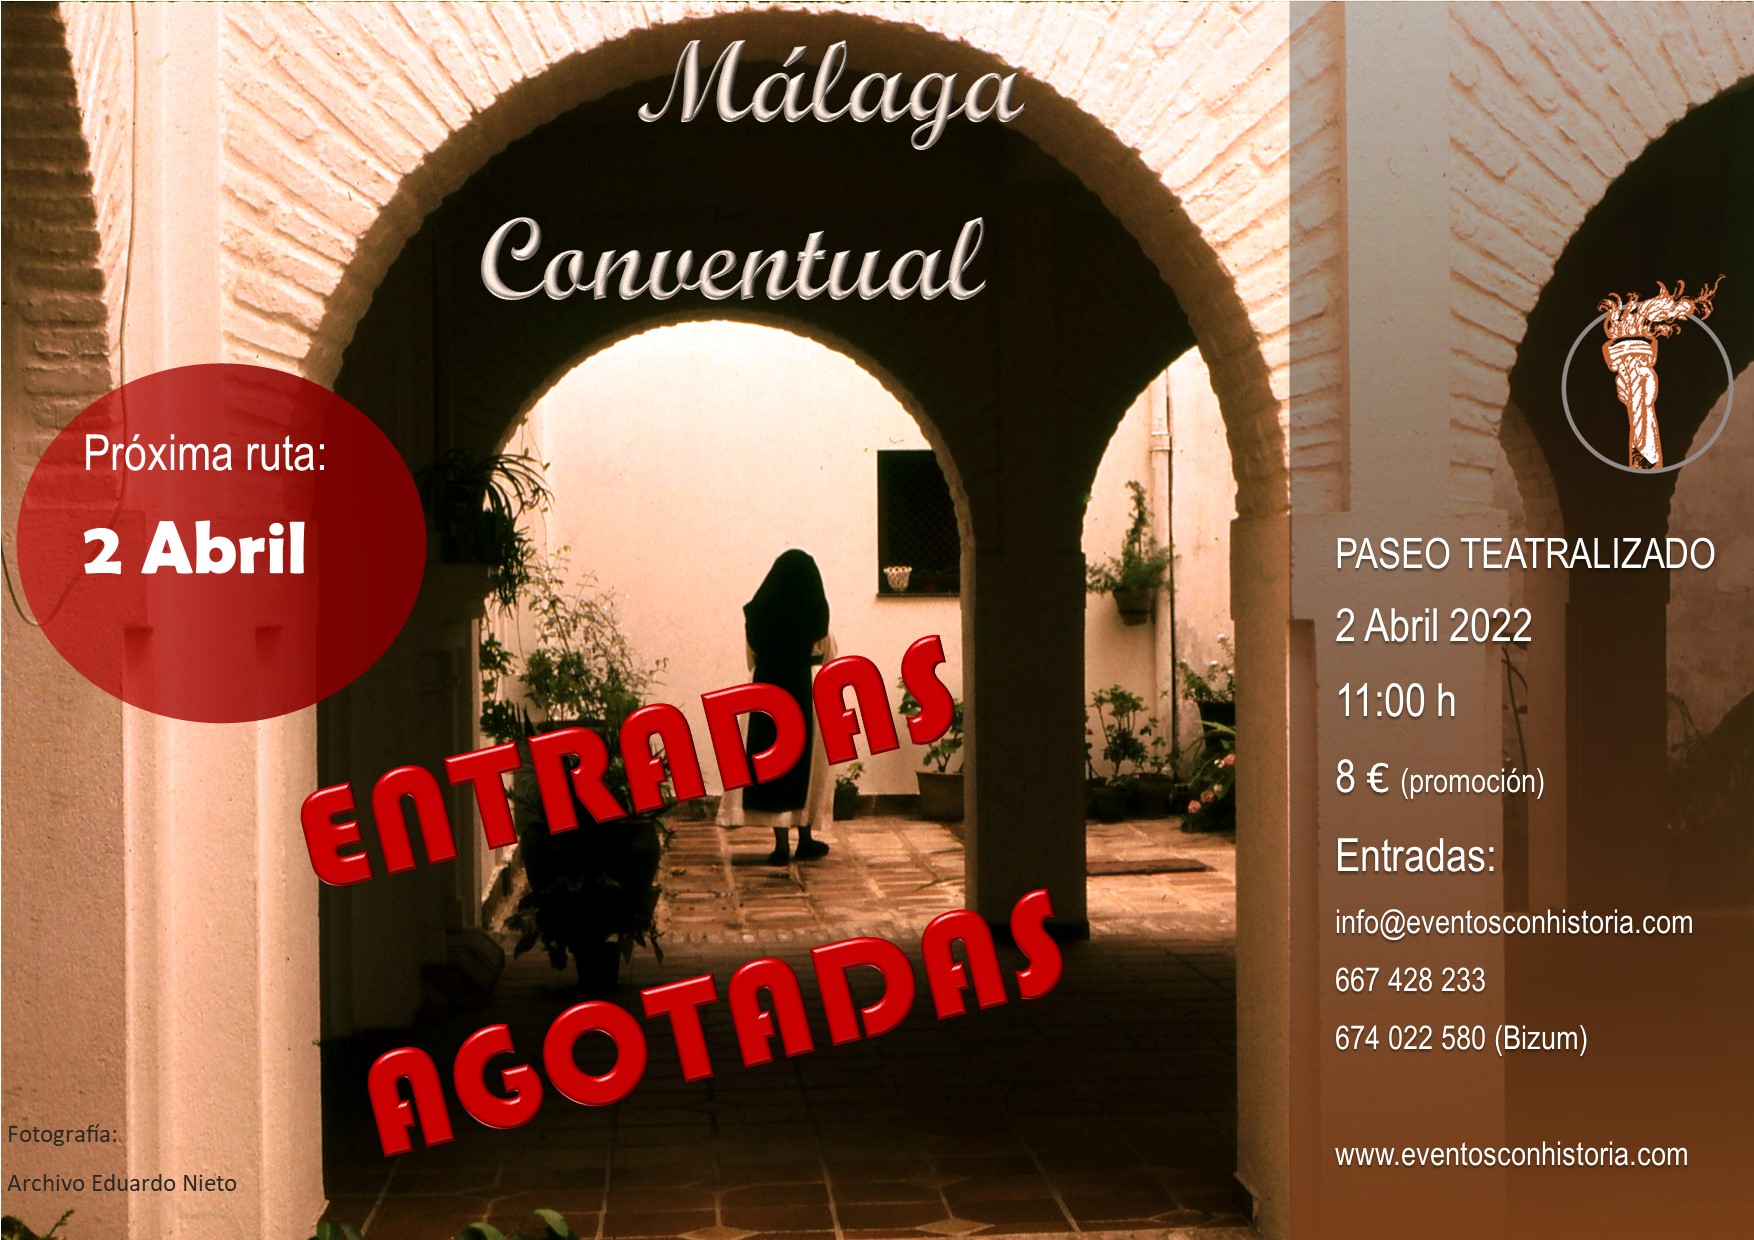 Málaga Conventual